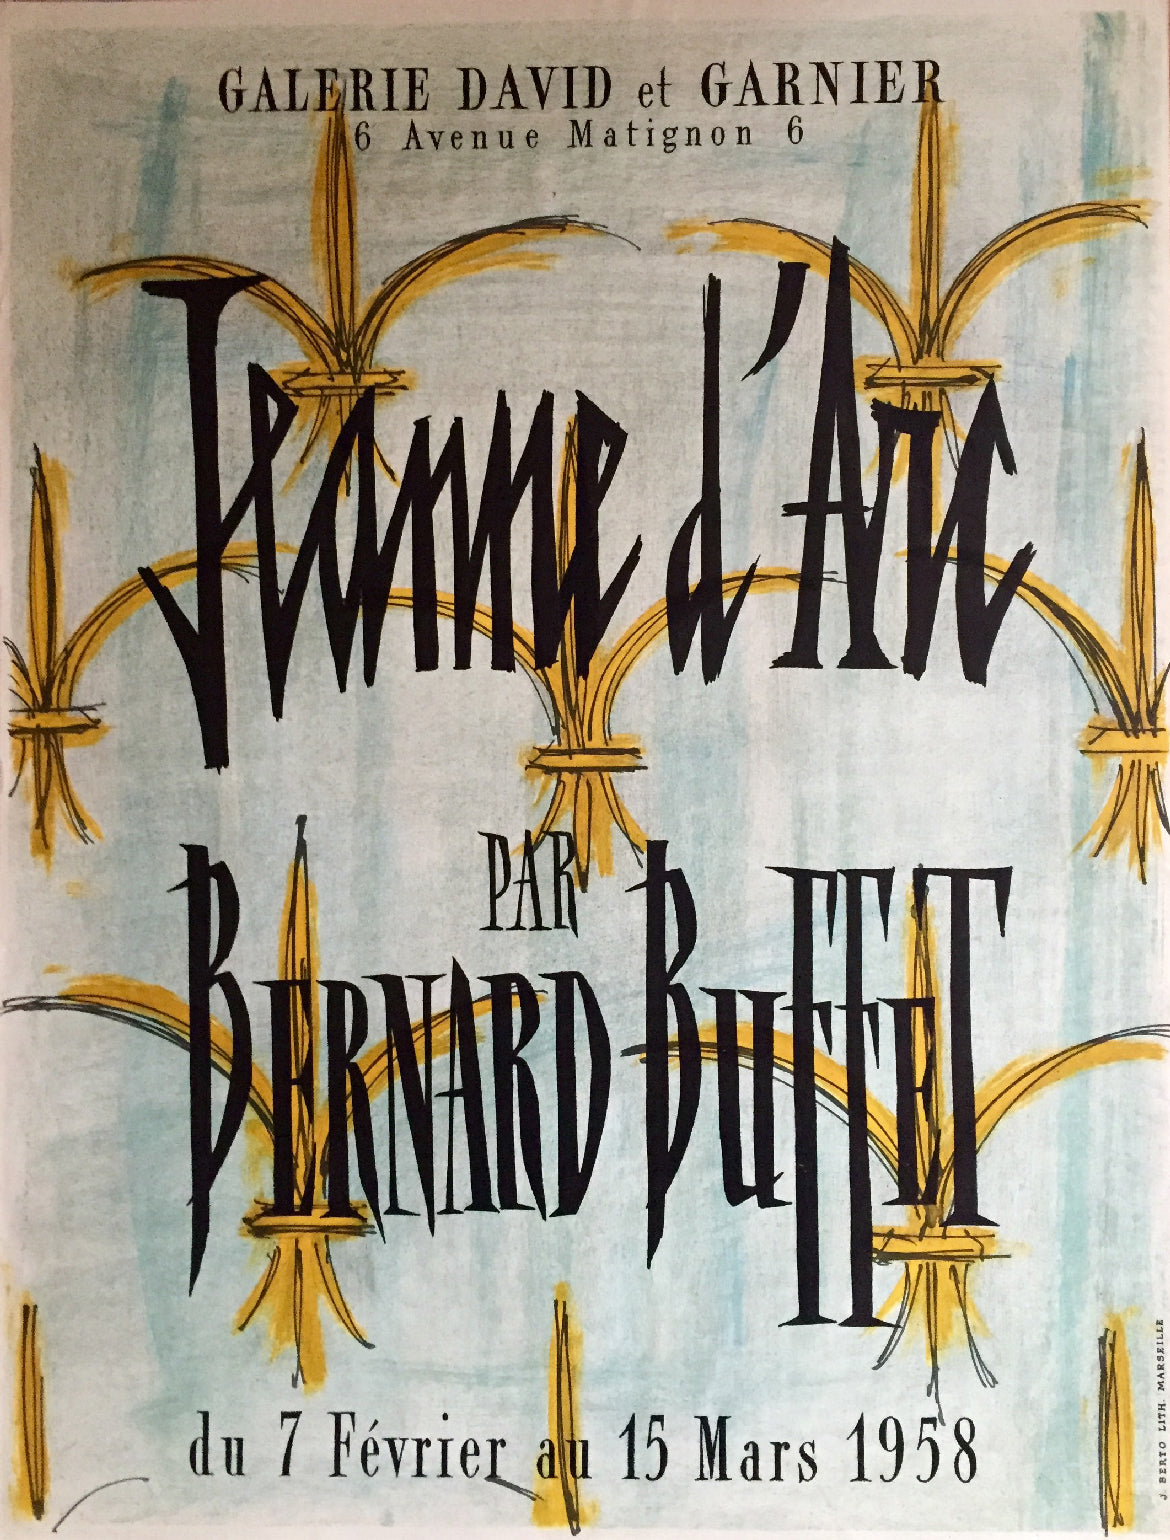 Affiche pour la galerie David et Garnier,  Exposition sur Jeanne d'Arc vue par l'artiste Bernard Buffet.  Du 7 février au 15 mars 1958.